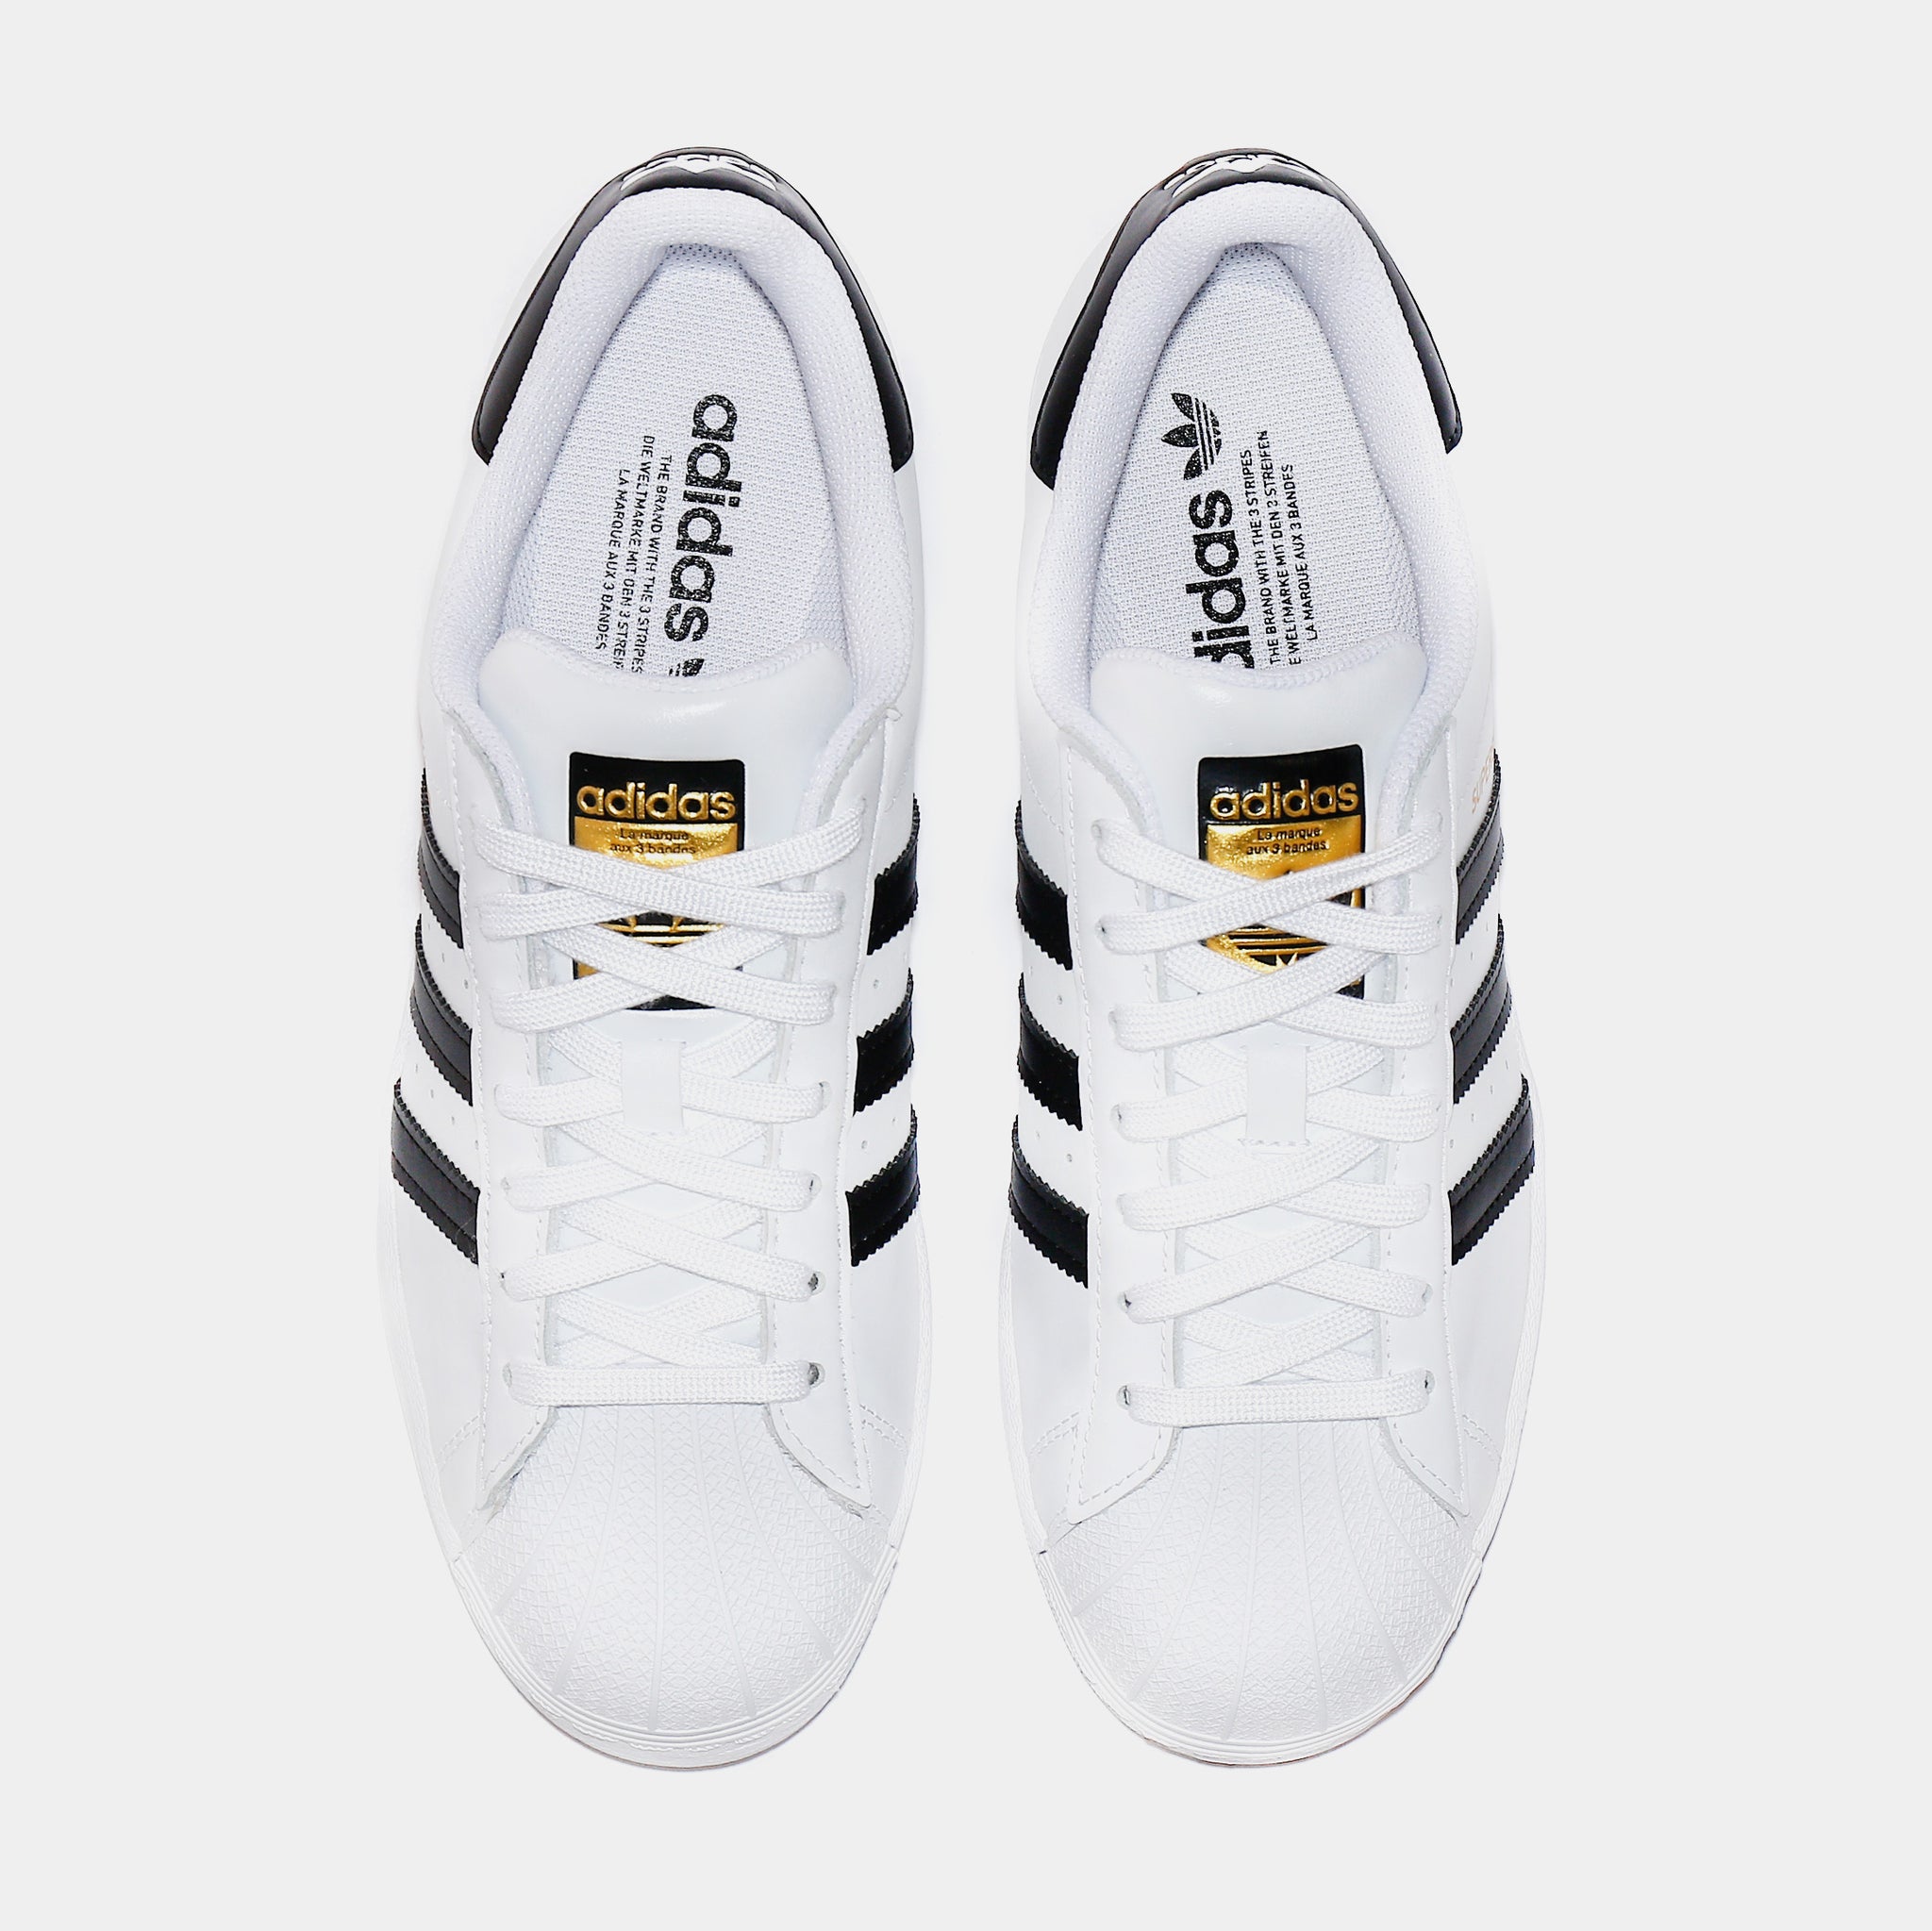 adidas Superstar Mens Lifestyle Shoe White Black EG4958 – Shoe Palace